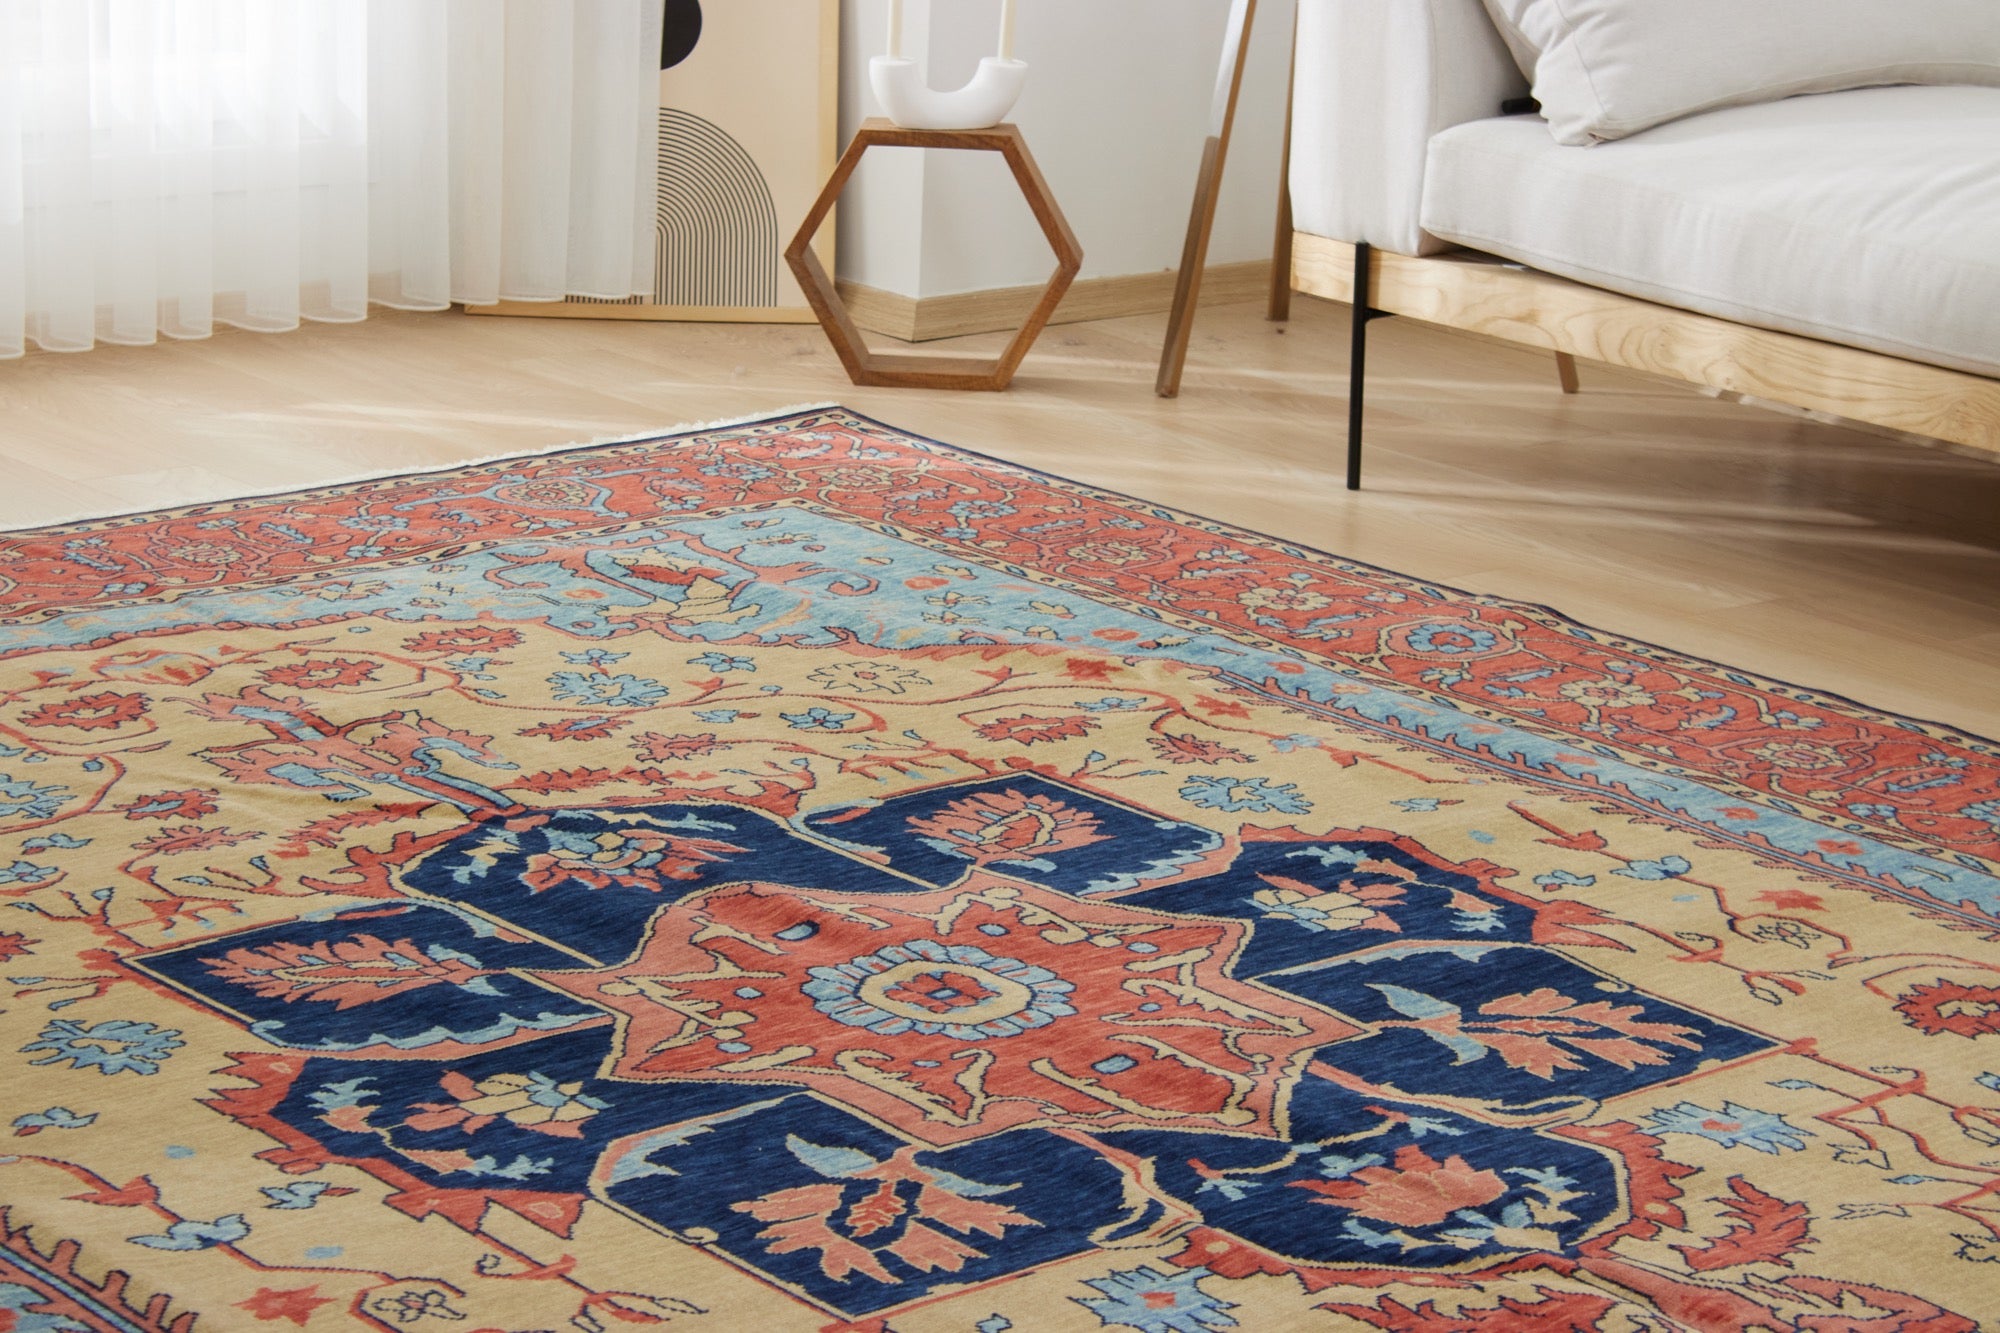 Kelson | New Oriental-Inspired Artisan Carpet | Kuden Rugs